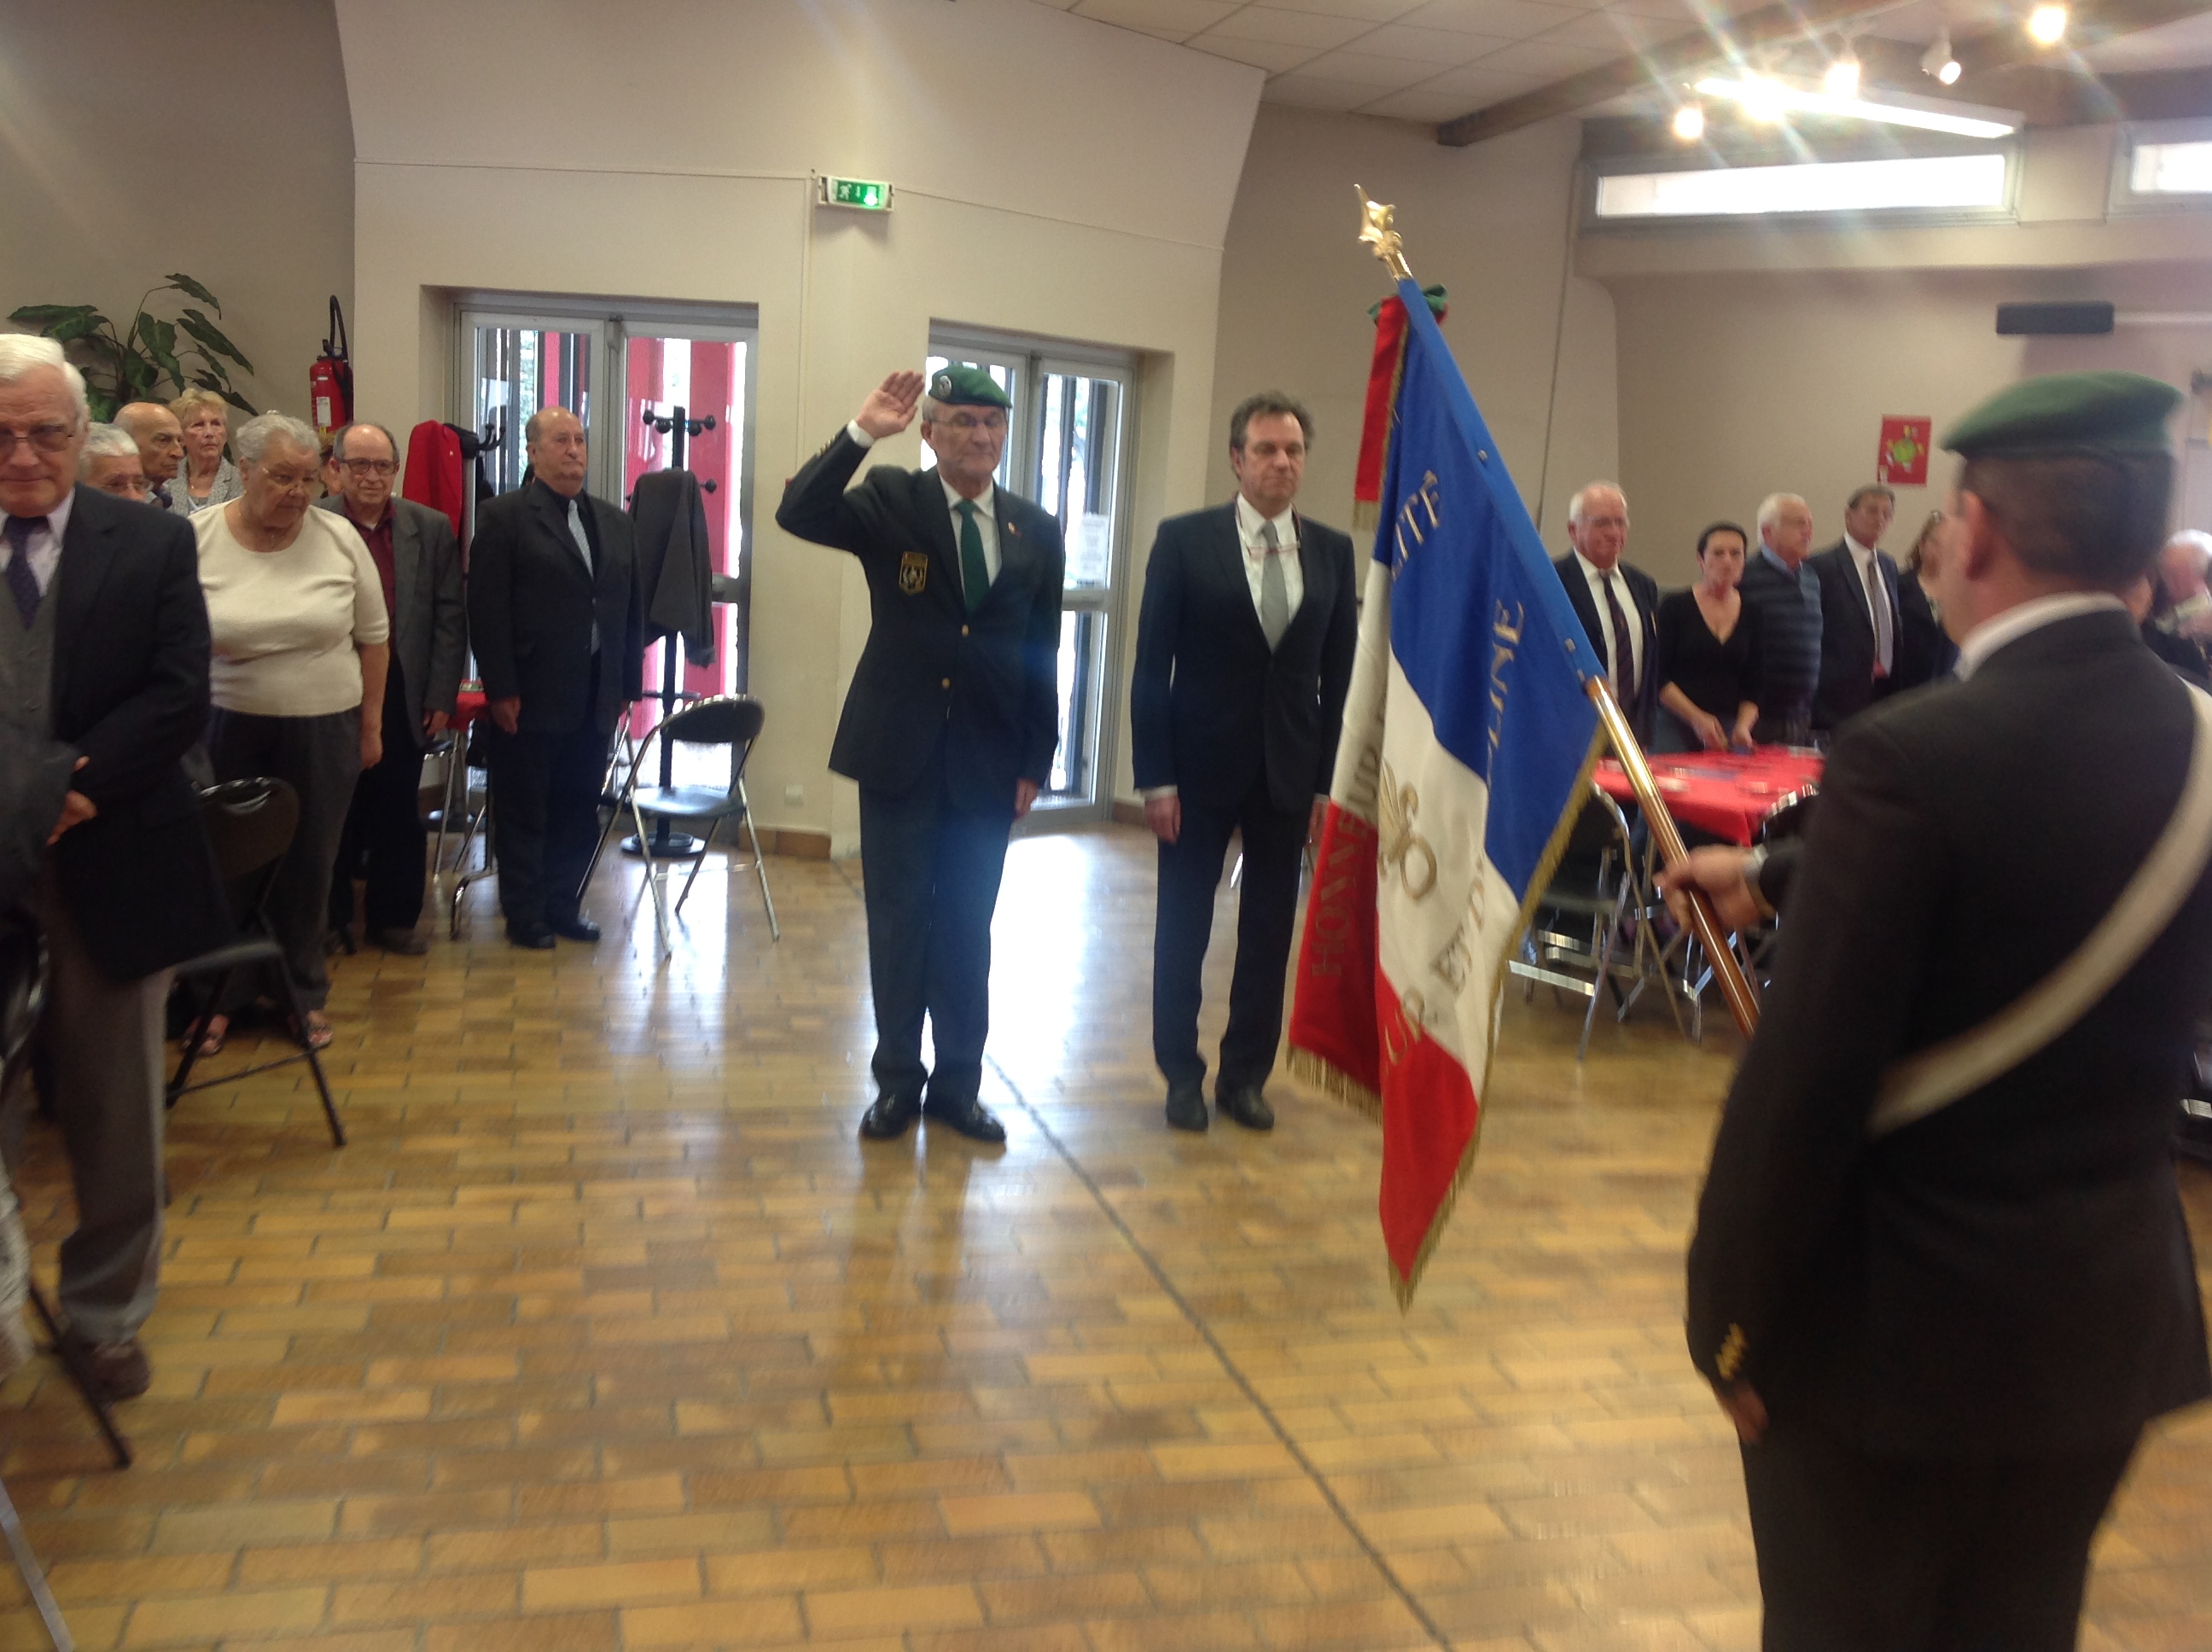 Honneurs au drapeau Constantin LIANOS Renaud Muselier.2014 03 29 14.33.01